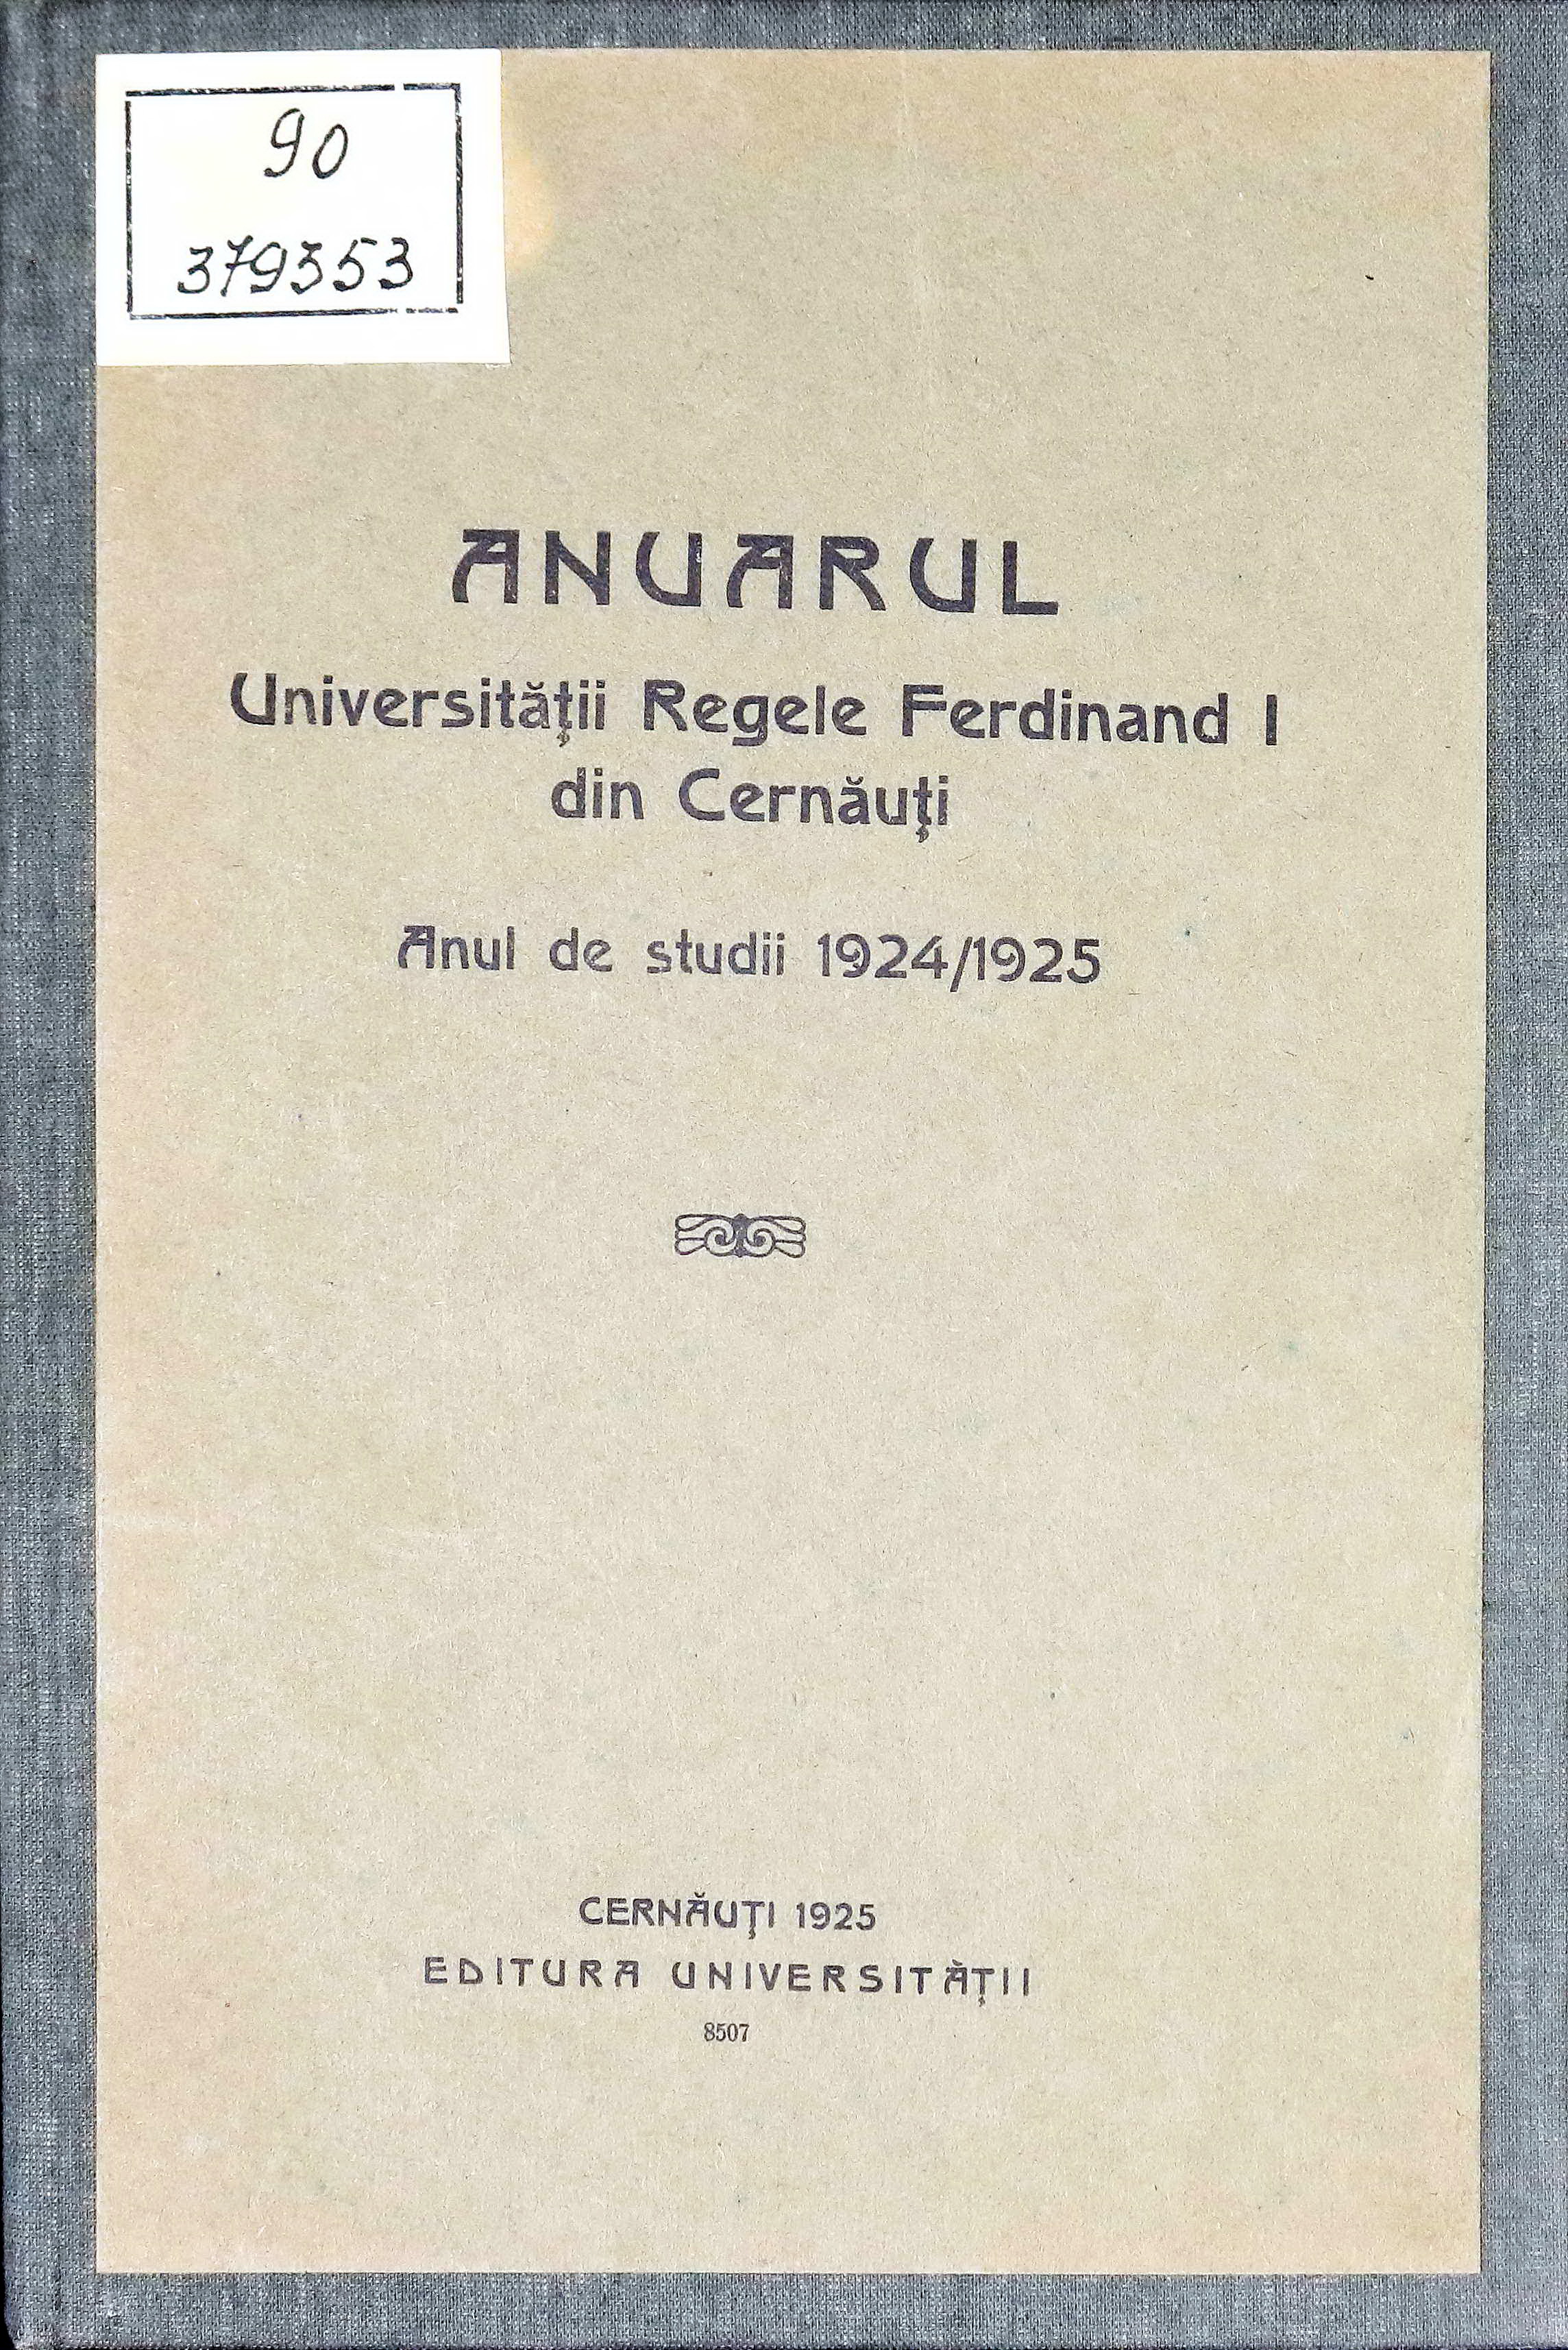 Anuarul universitatii din Cernauti pentru anii de studii 1924 / 1925.